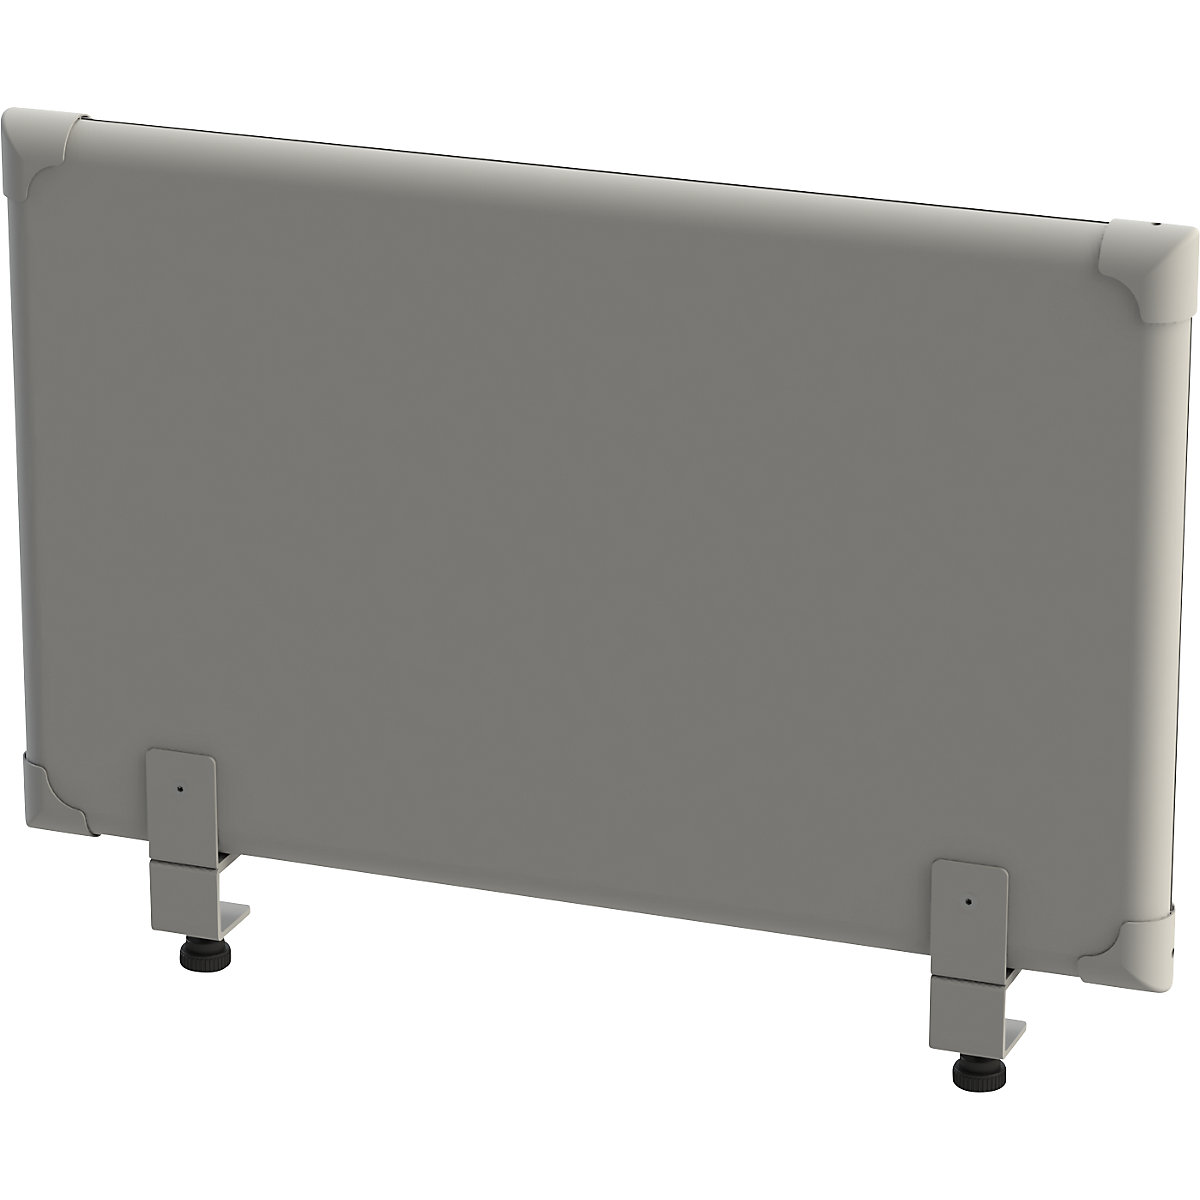 EUROKRAFTpro Akustik-Tischaufsatz-Paneel, Höhe 450 mm, Breite 800 mm, grau